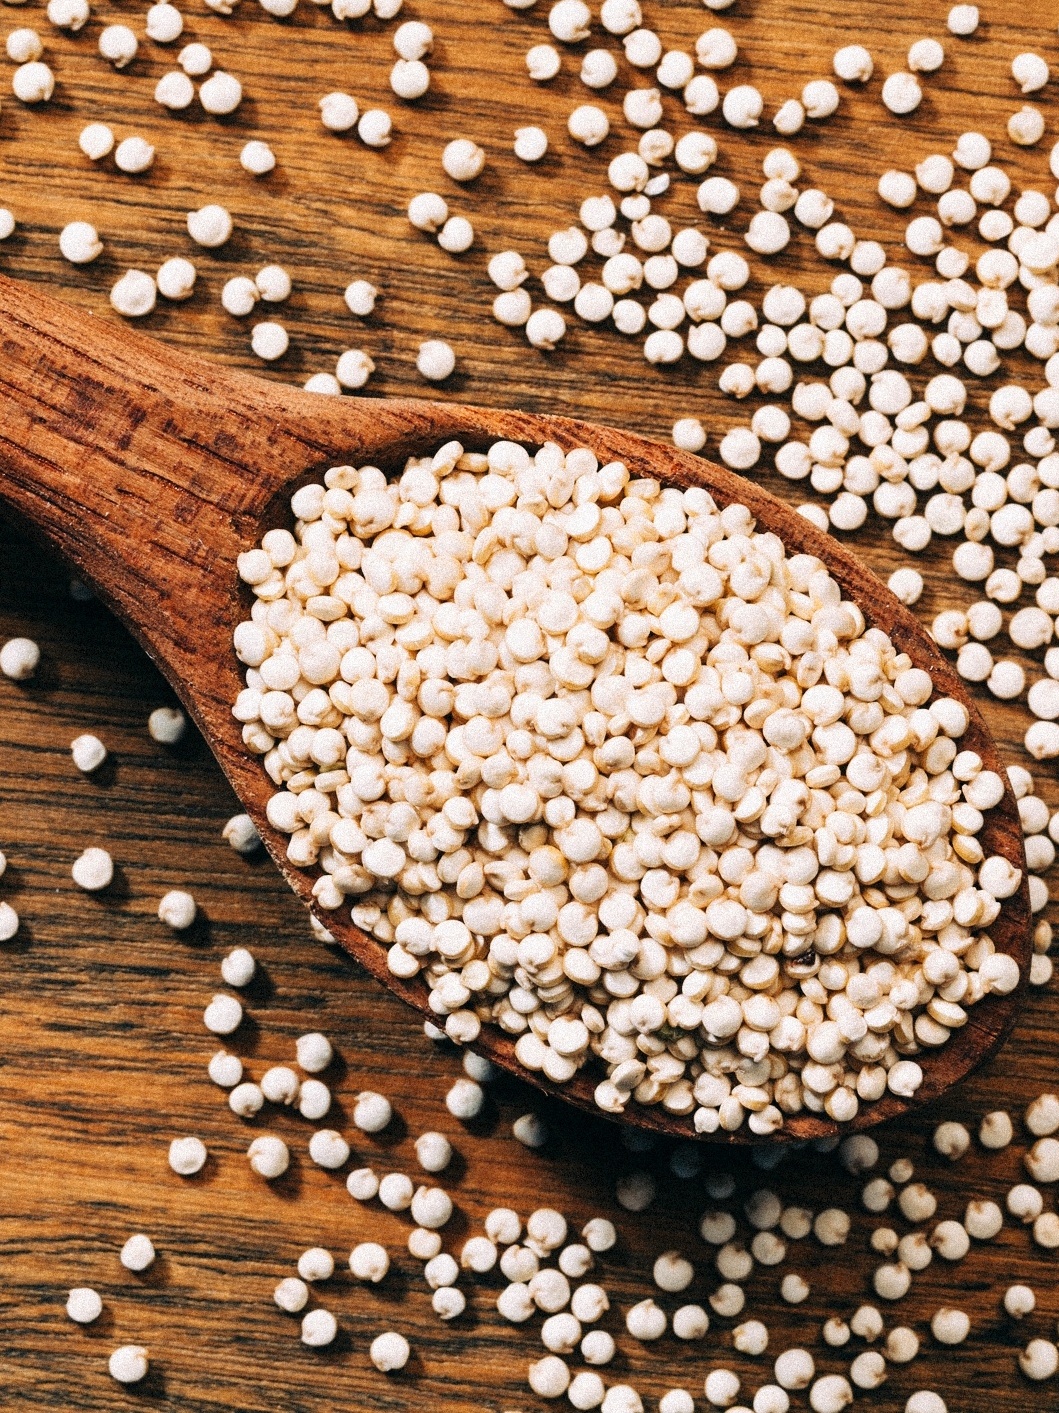 Quinoa Natural - Alimentos e produtos saudáveis